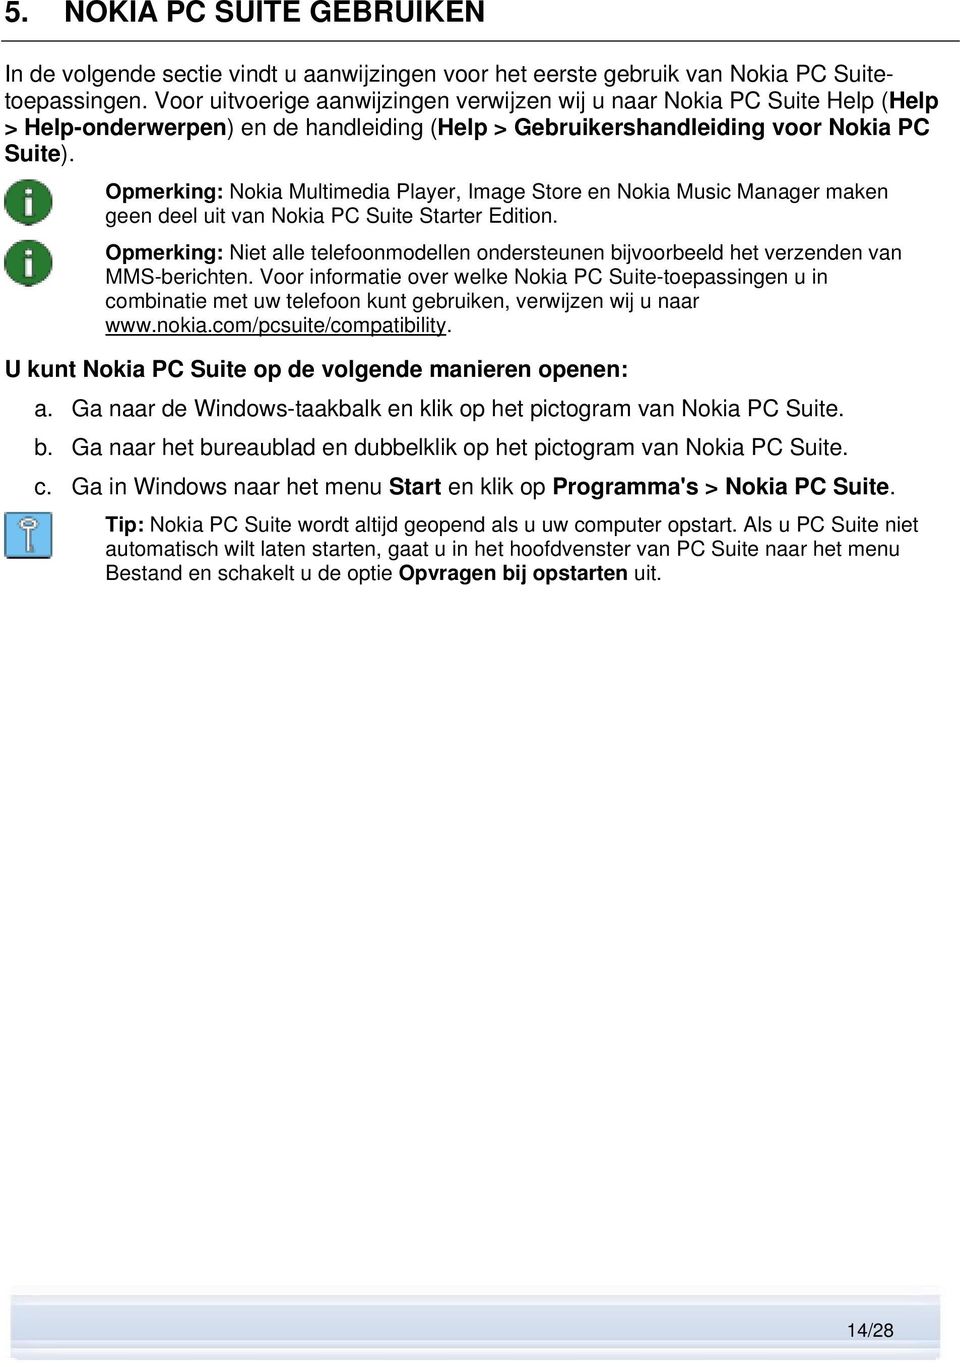 Opmerking: Nokia Multimedia Player, Image Store en Nokia Music Manager maken geen deel uit van Nokia PC Suite Starter Edition.